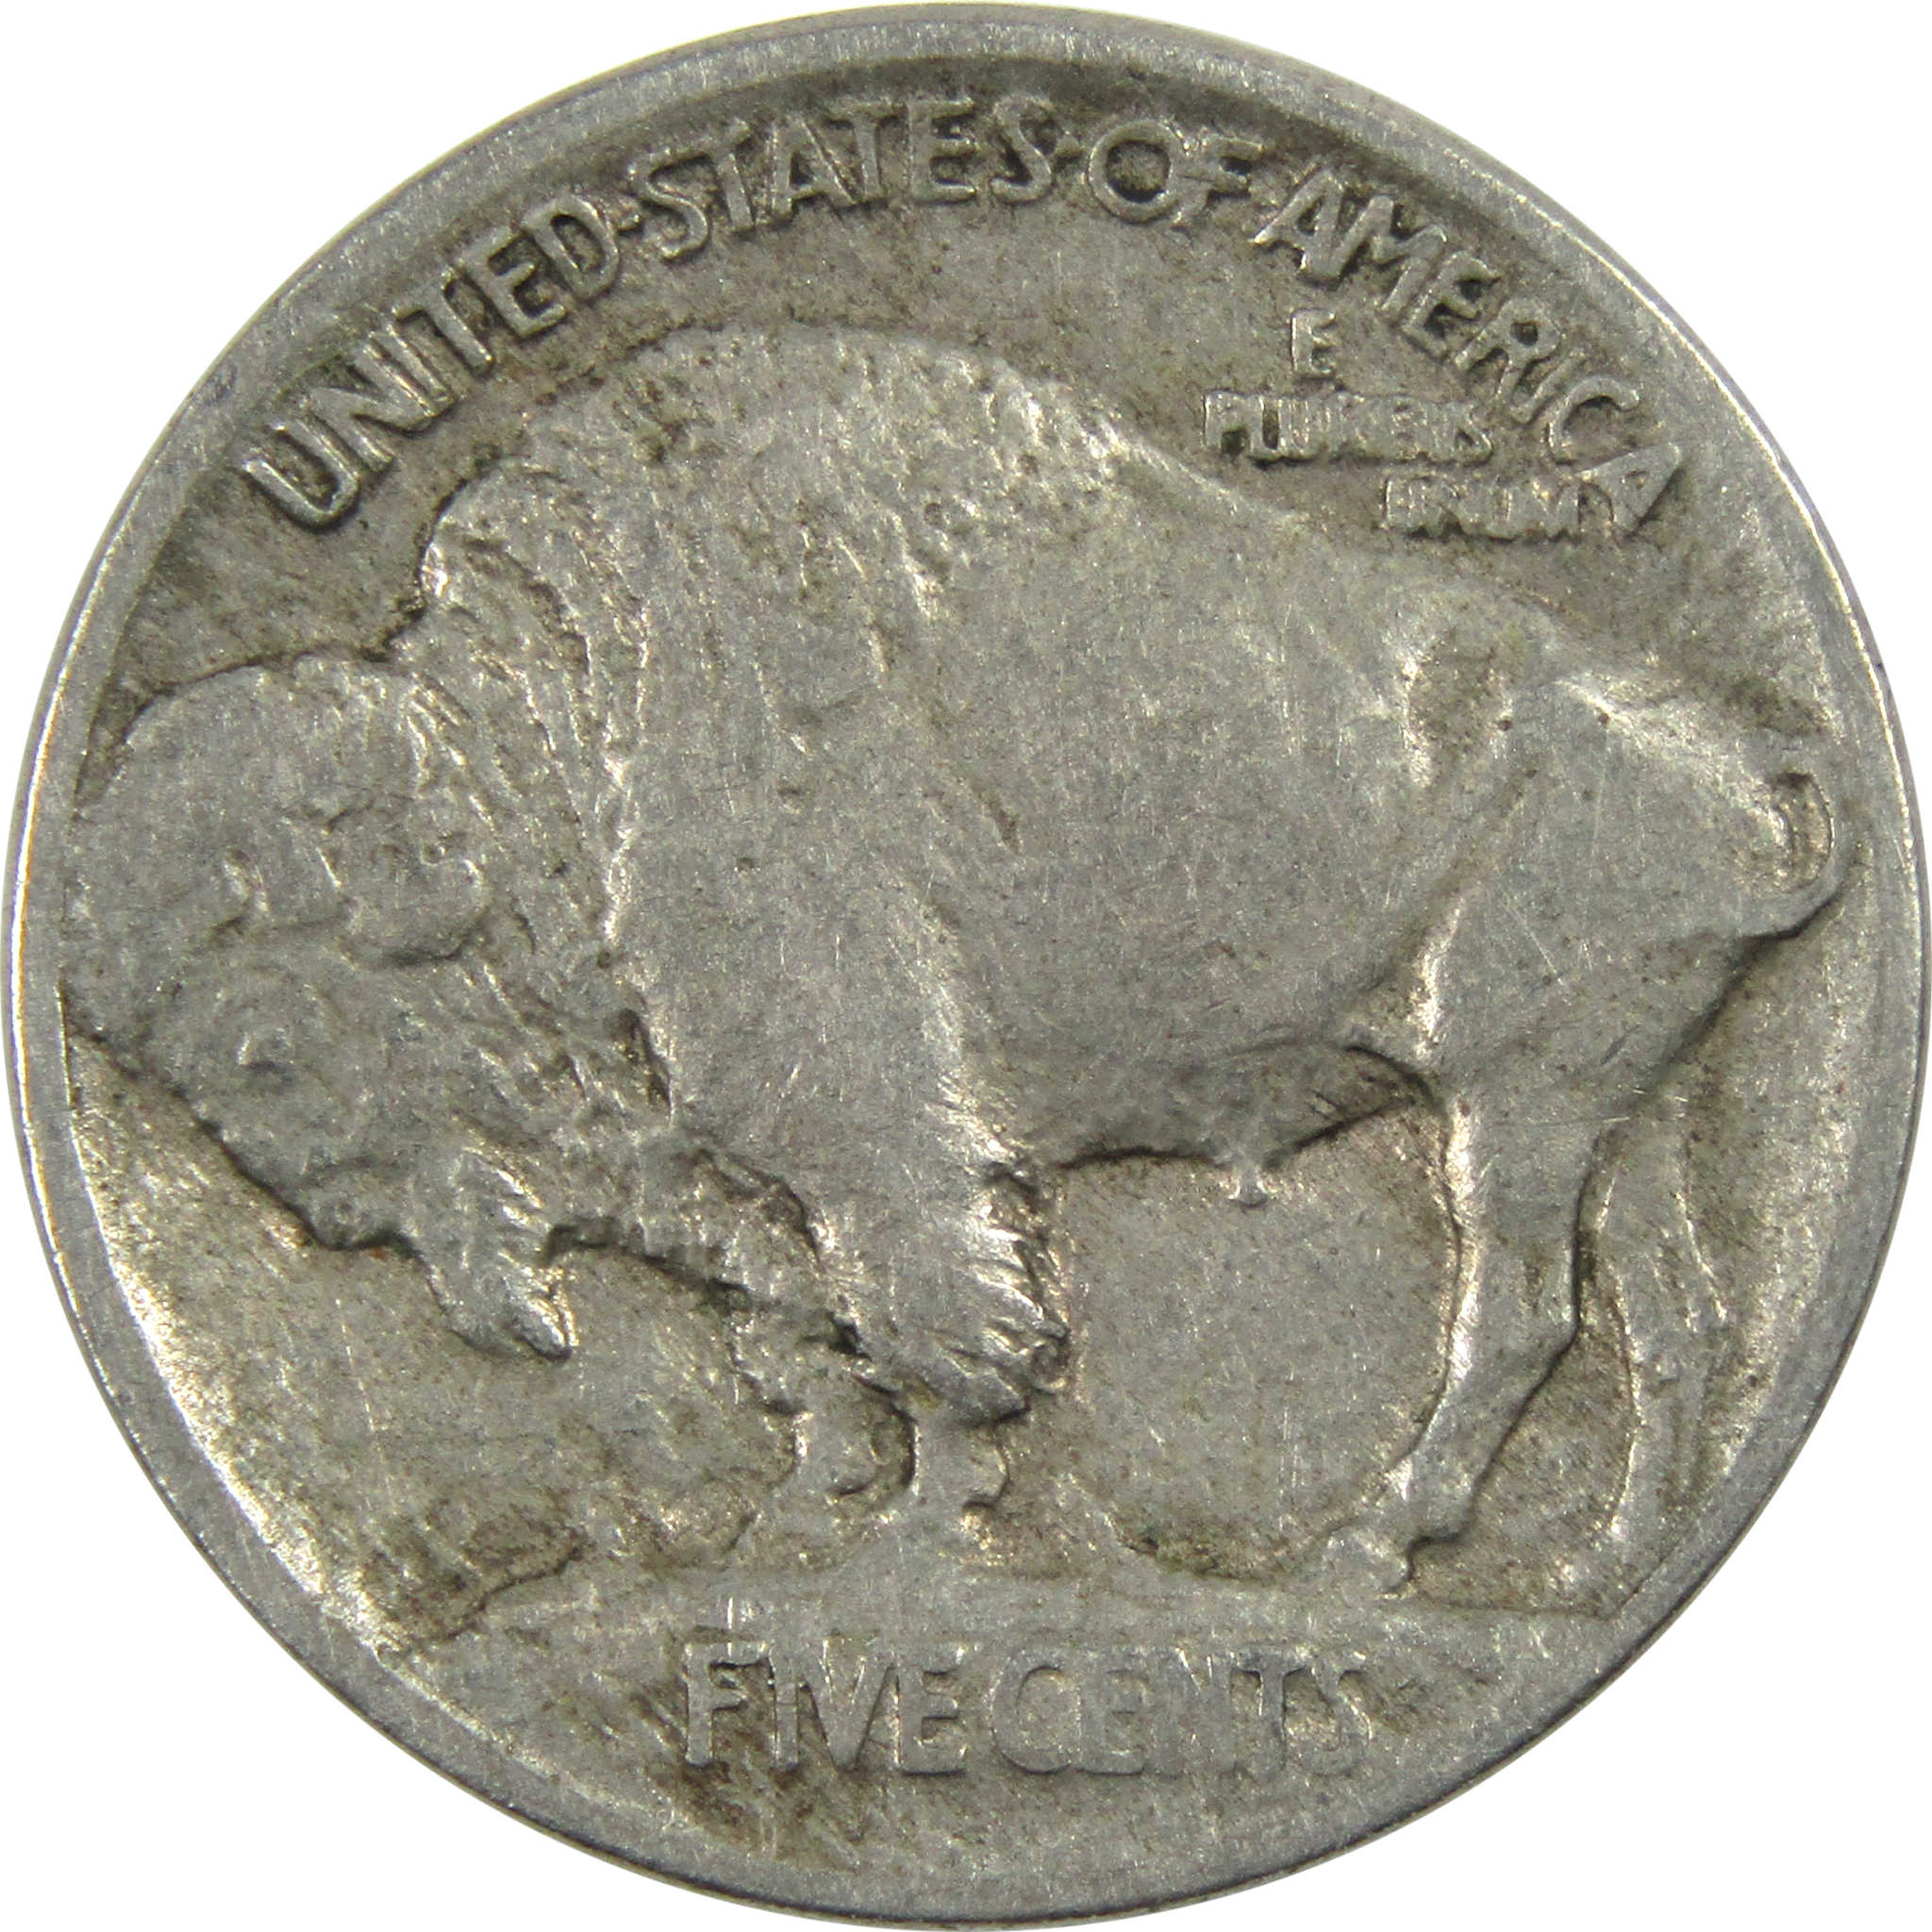 1913 Type 1 Indian Head Buffalo Nickel F Fine 5c Coin SKU:I12996